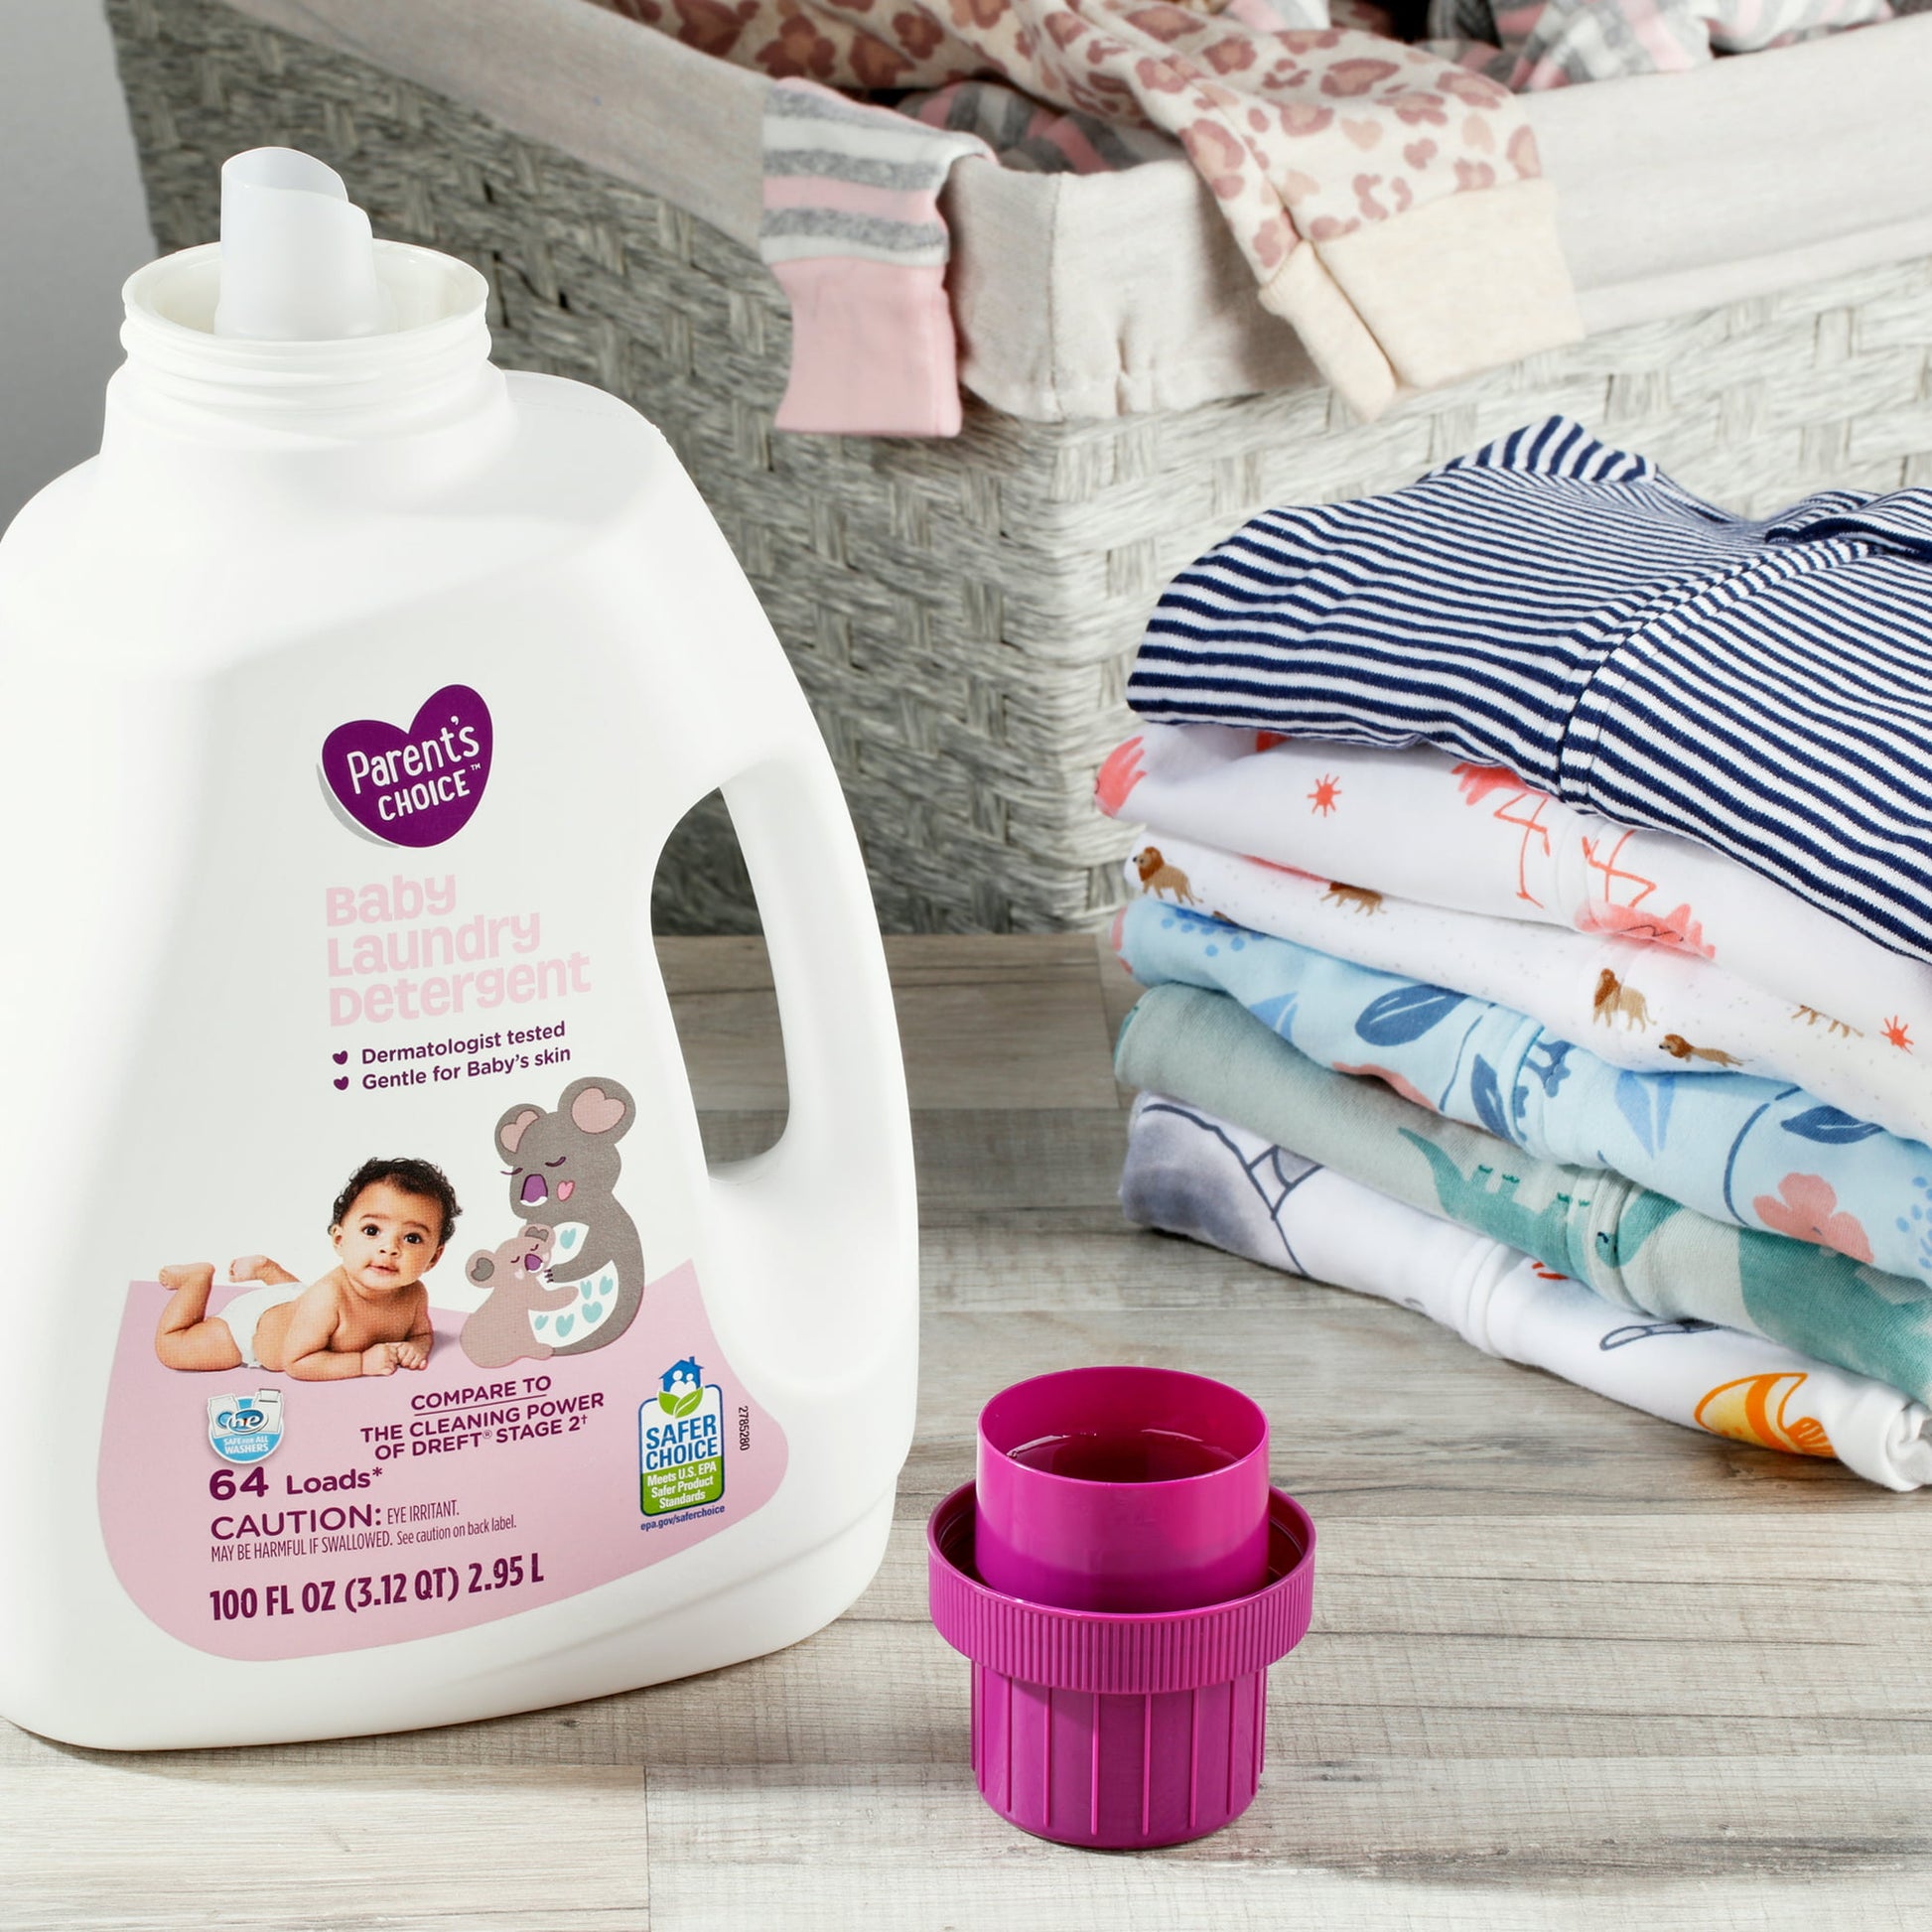 Productos WIPE - El detergente con suavizante de bebé #WIPE deja la ropa de  los pequeños con un aroma y una suavidad insuperable. El cuidado que tus  bebés merecen #ProductosWipe #venezuela #barquisimeto #